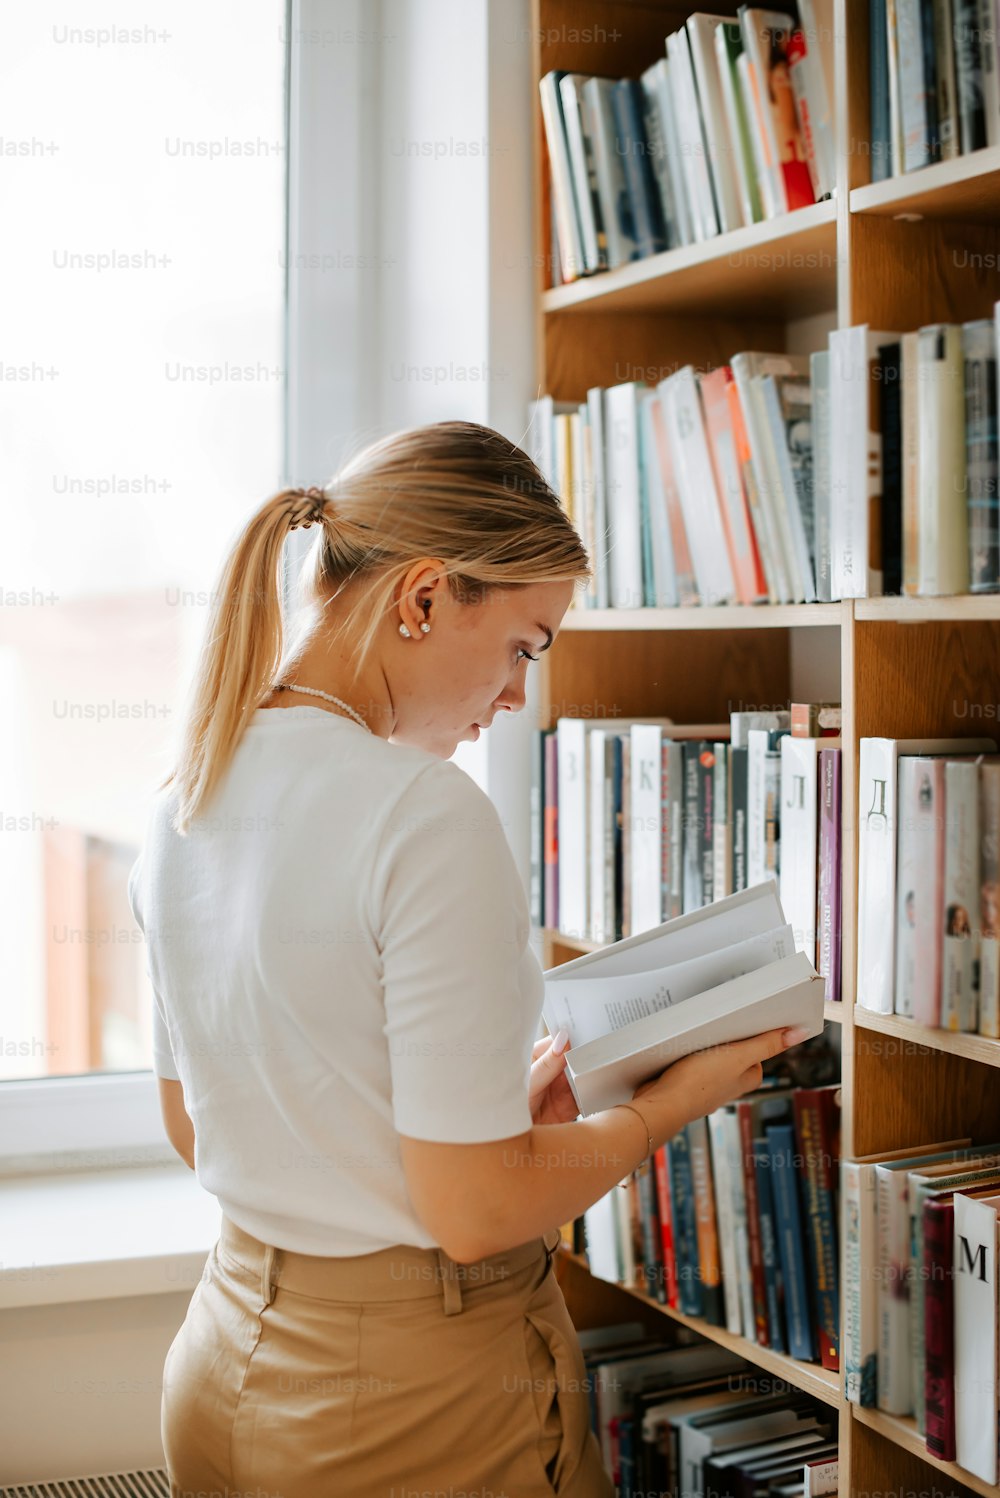 Una mujer leyendo un libro en una biblioteca